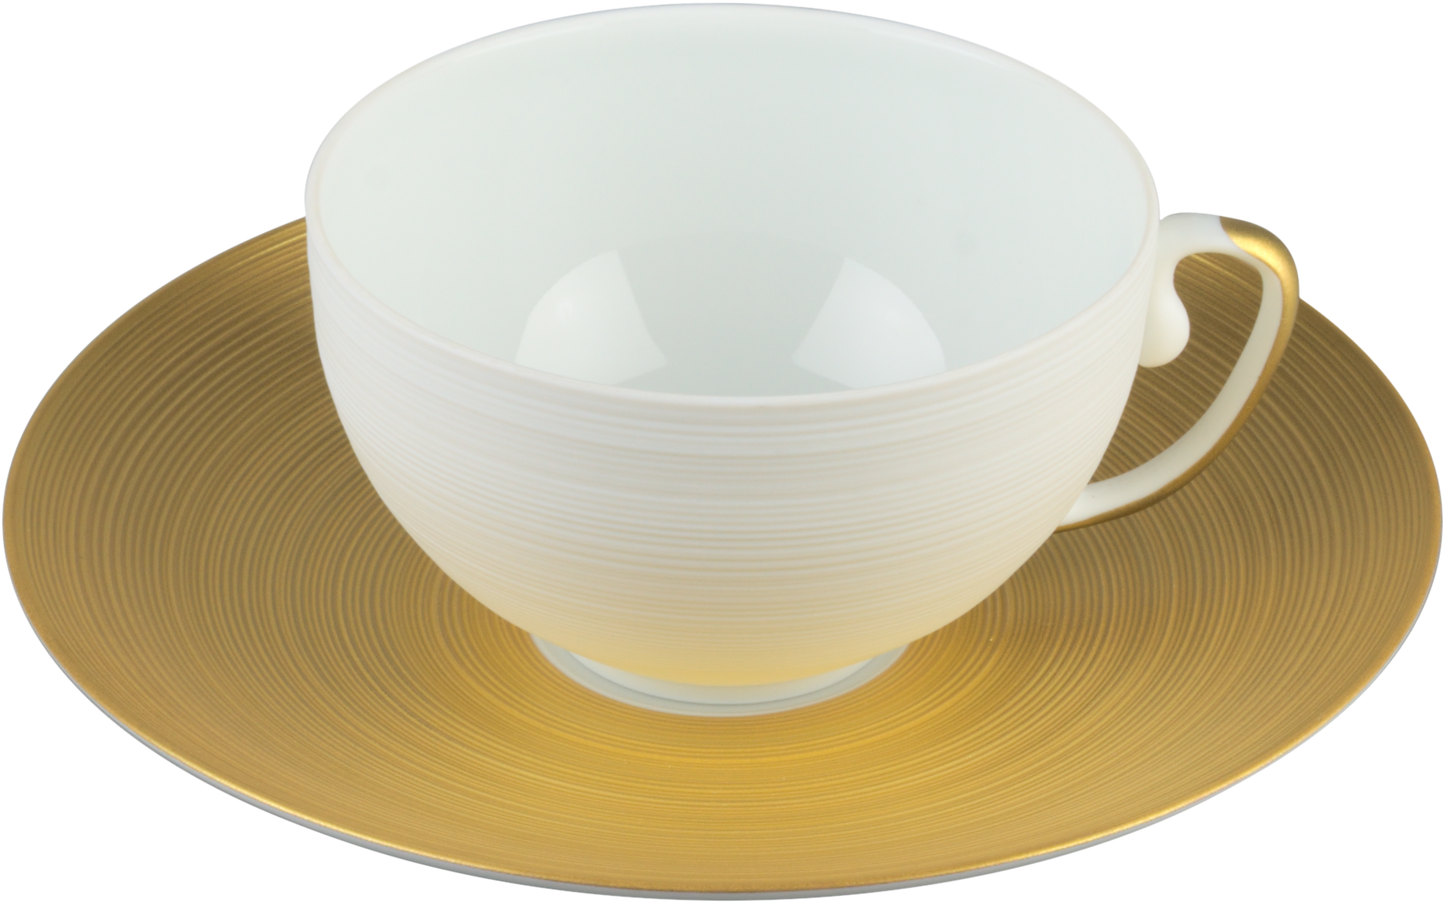 Hemisphere Gold Teacup